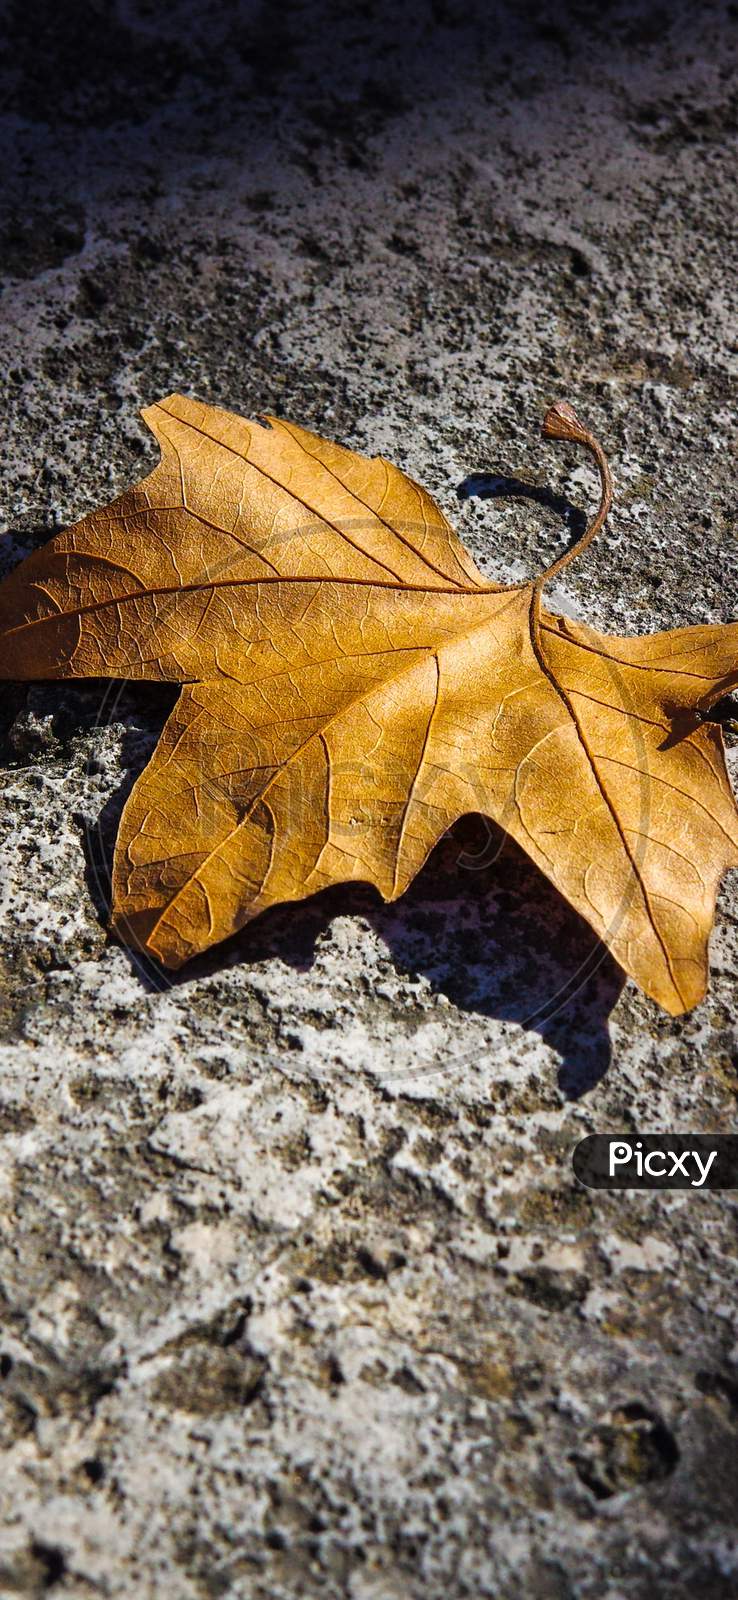 Fallen Autumn leaf